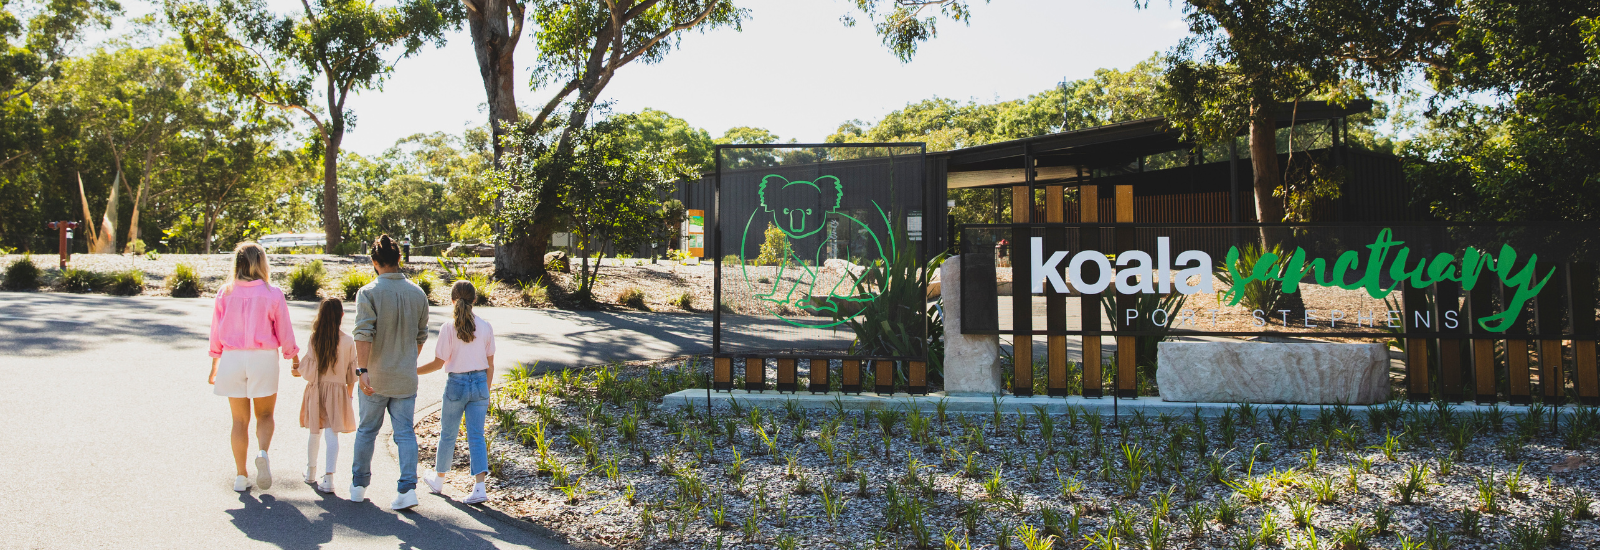 Koala Sanctuary Entrance banner image